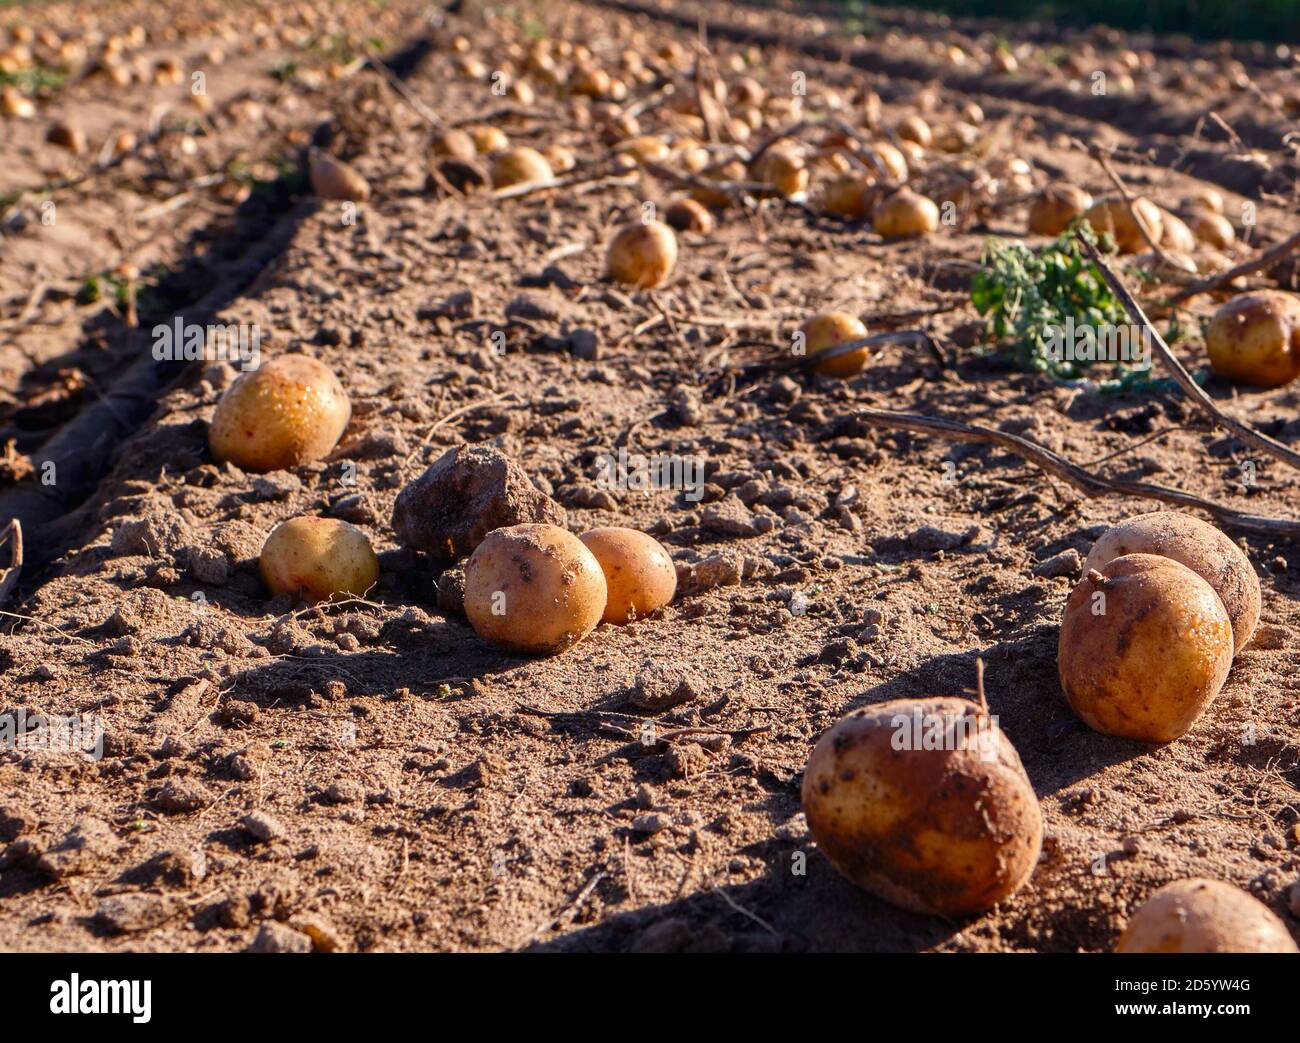 otato récolte au soleil en automne, pommes de terre fraîches biologiques dans le champ. Banque D'Images